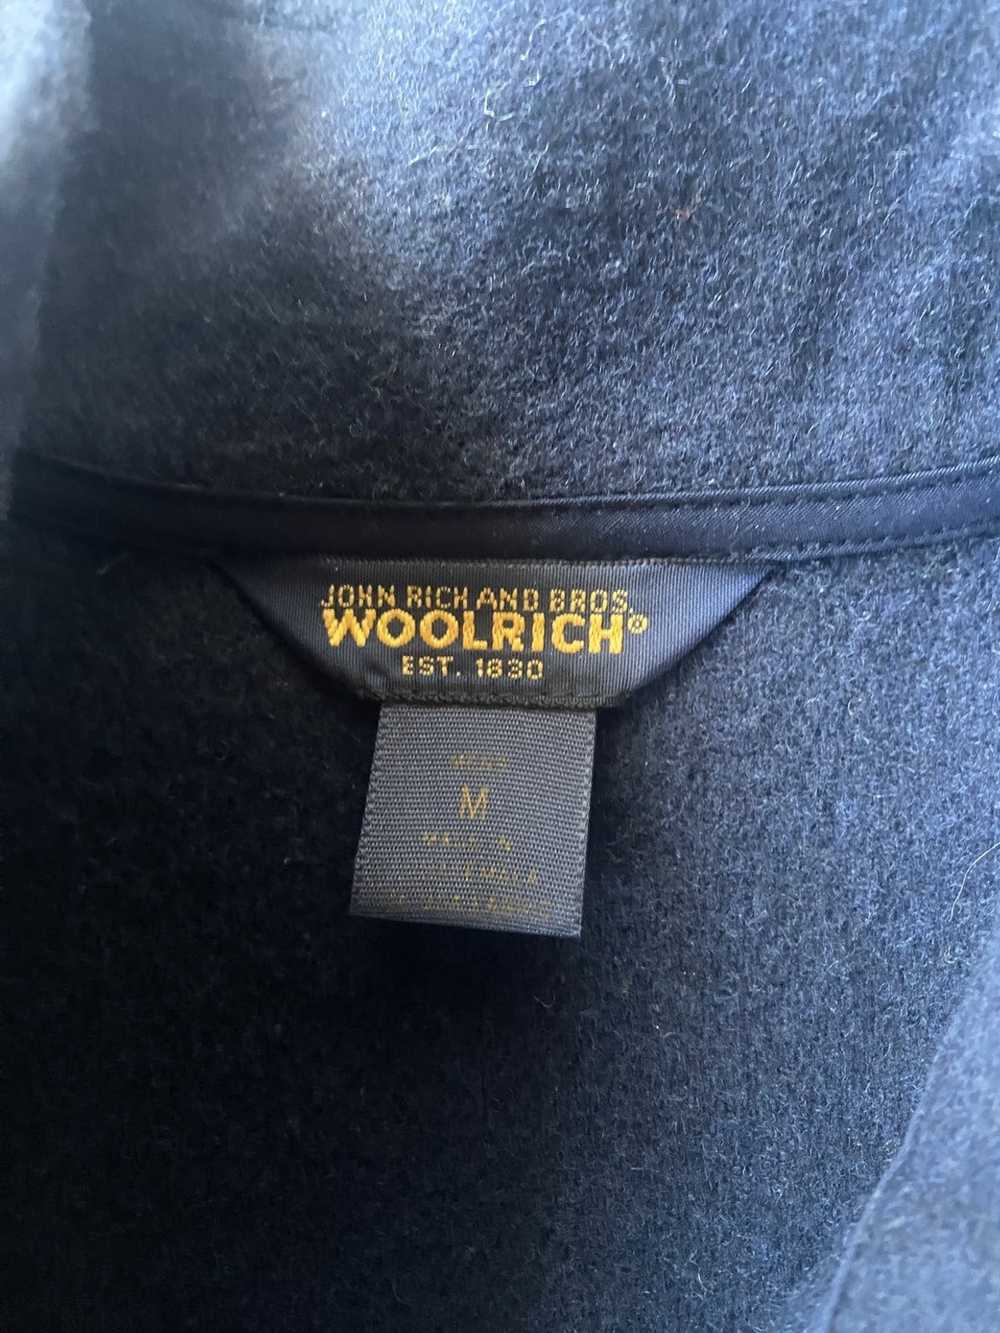 Woolrich Woolen Mills Vintage navy fleece jacket - image 4